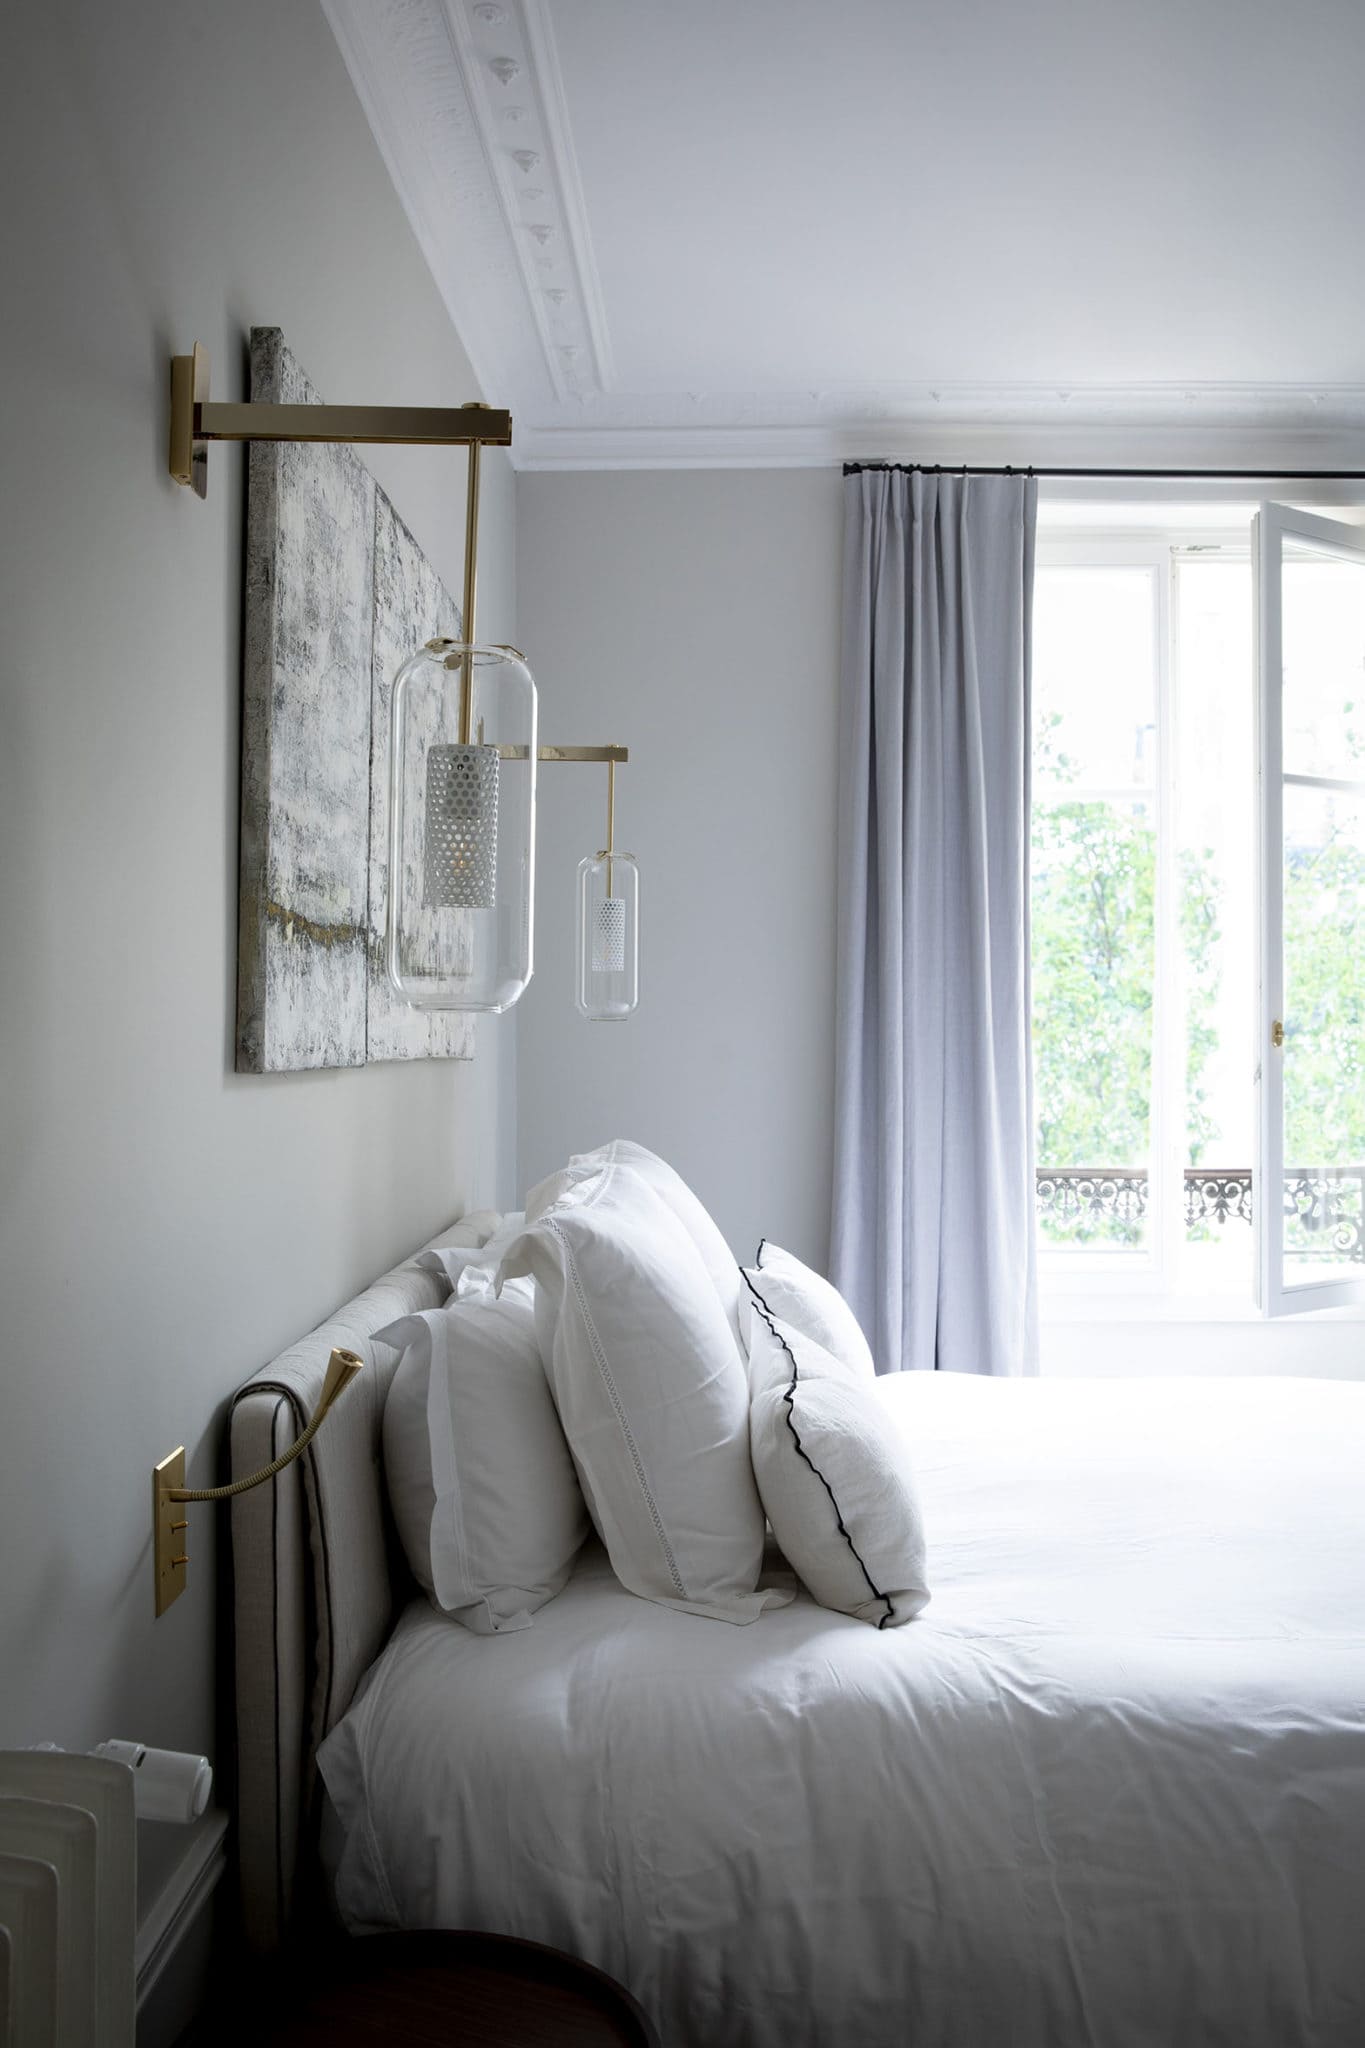 Lighting design for a high-end bedroom